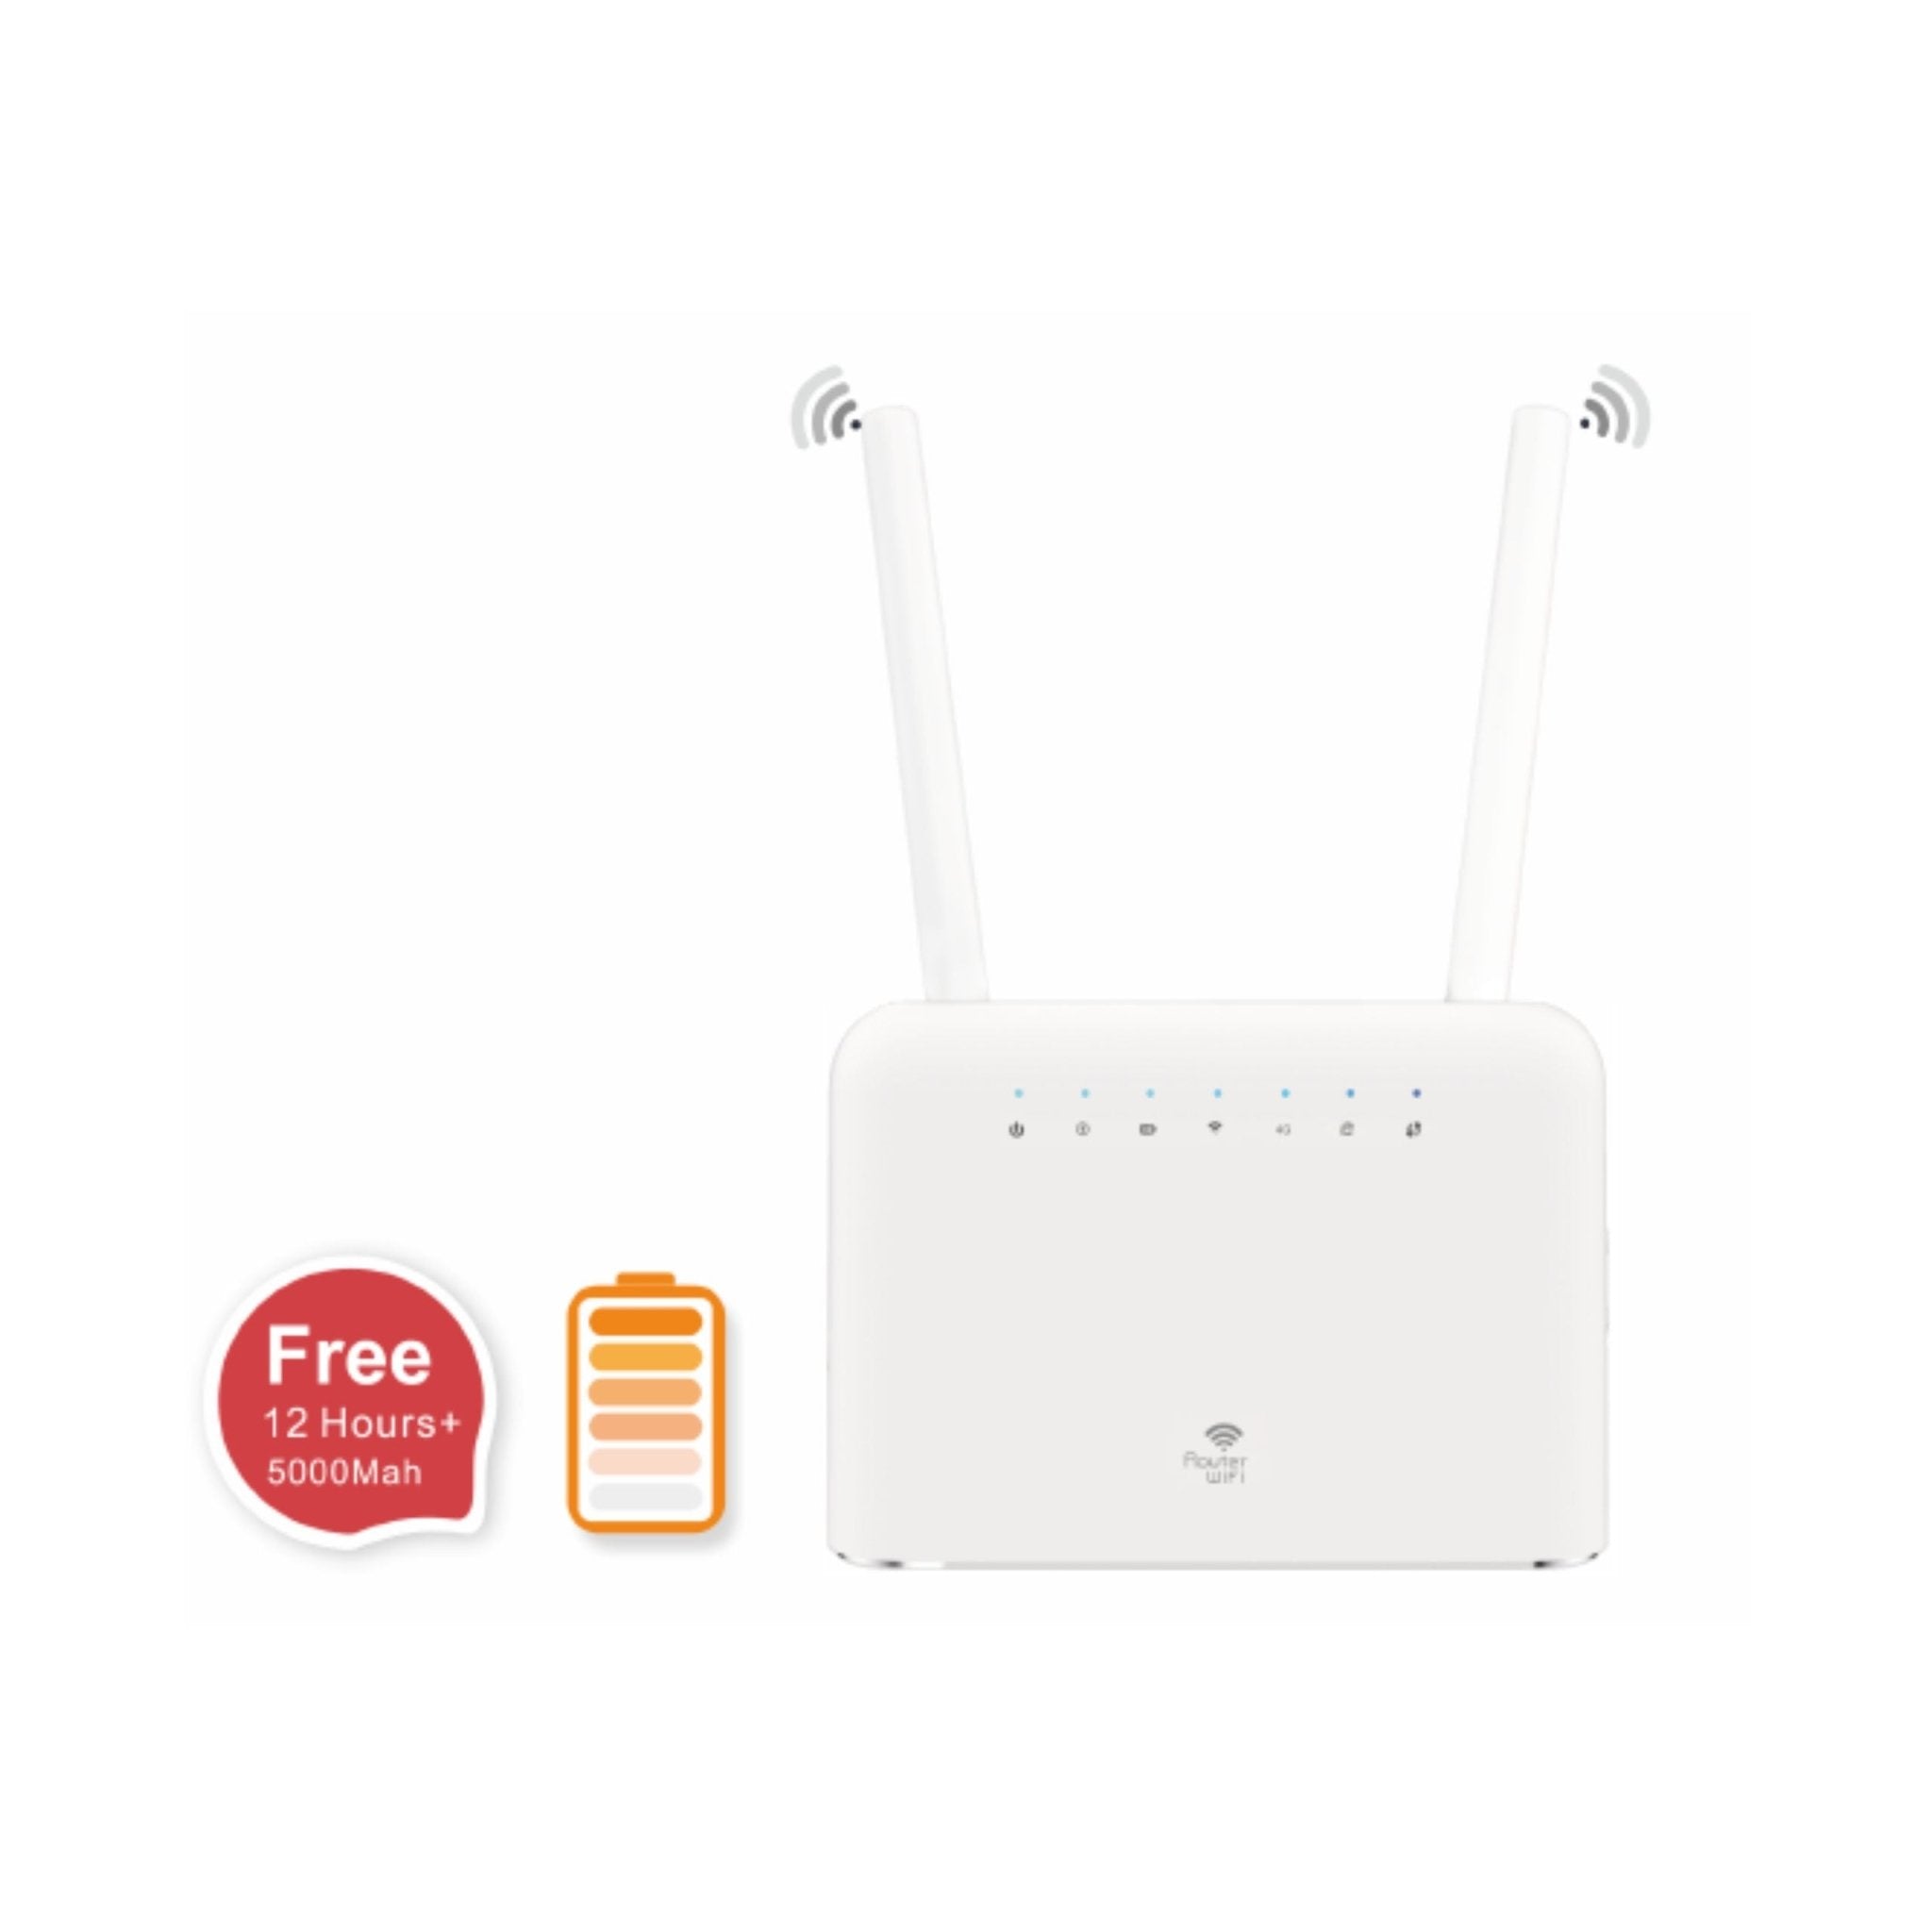 TOPLINK 5000mAh 4G Router Pro3 HW715s - White